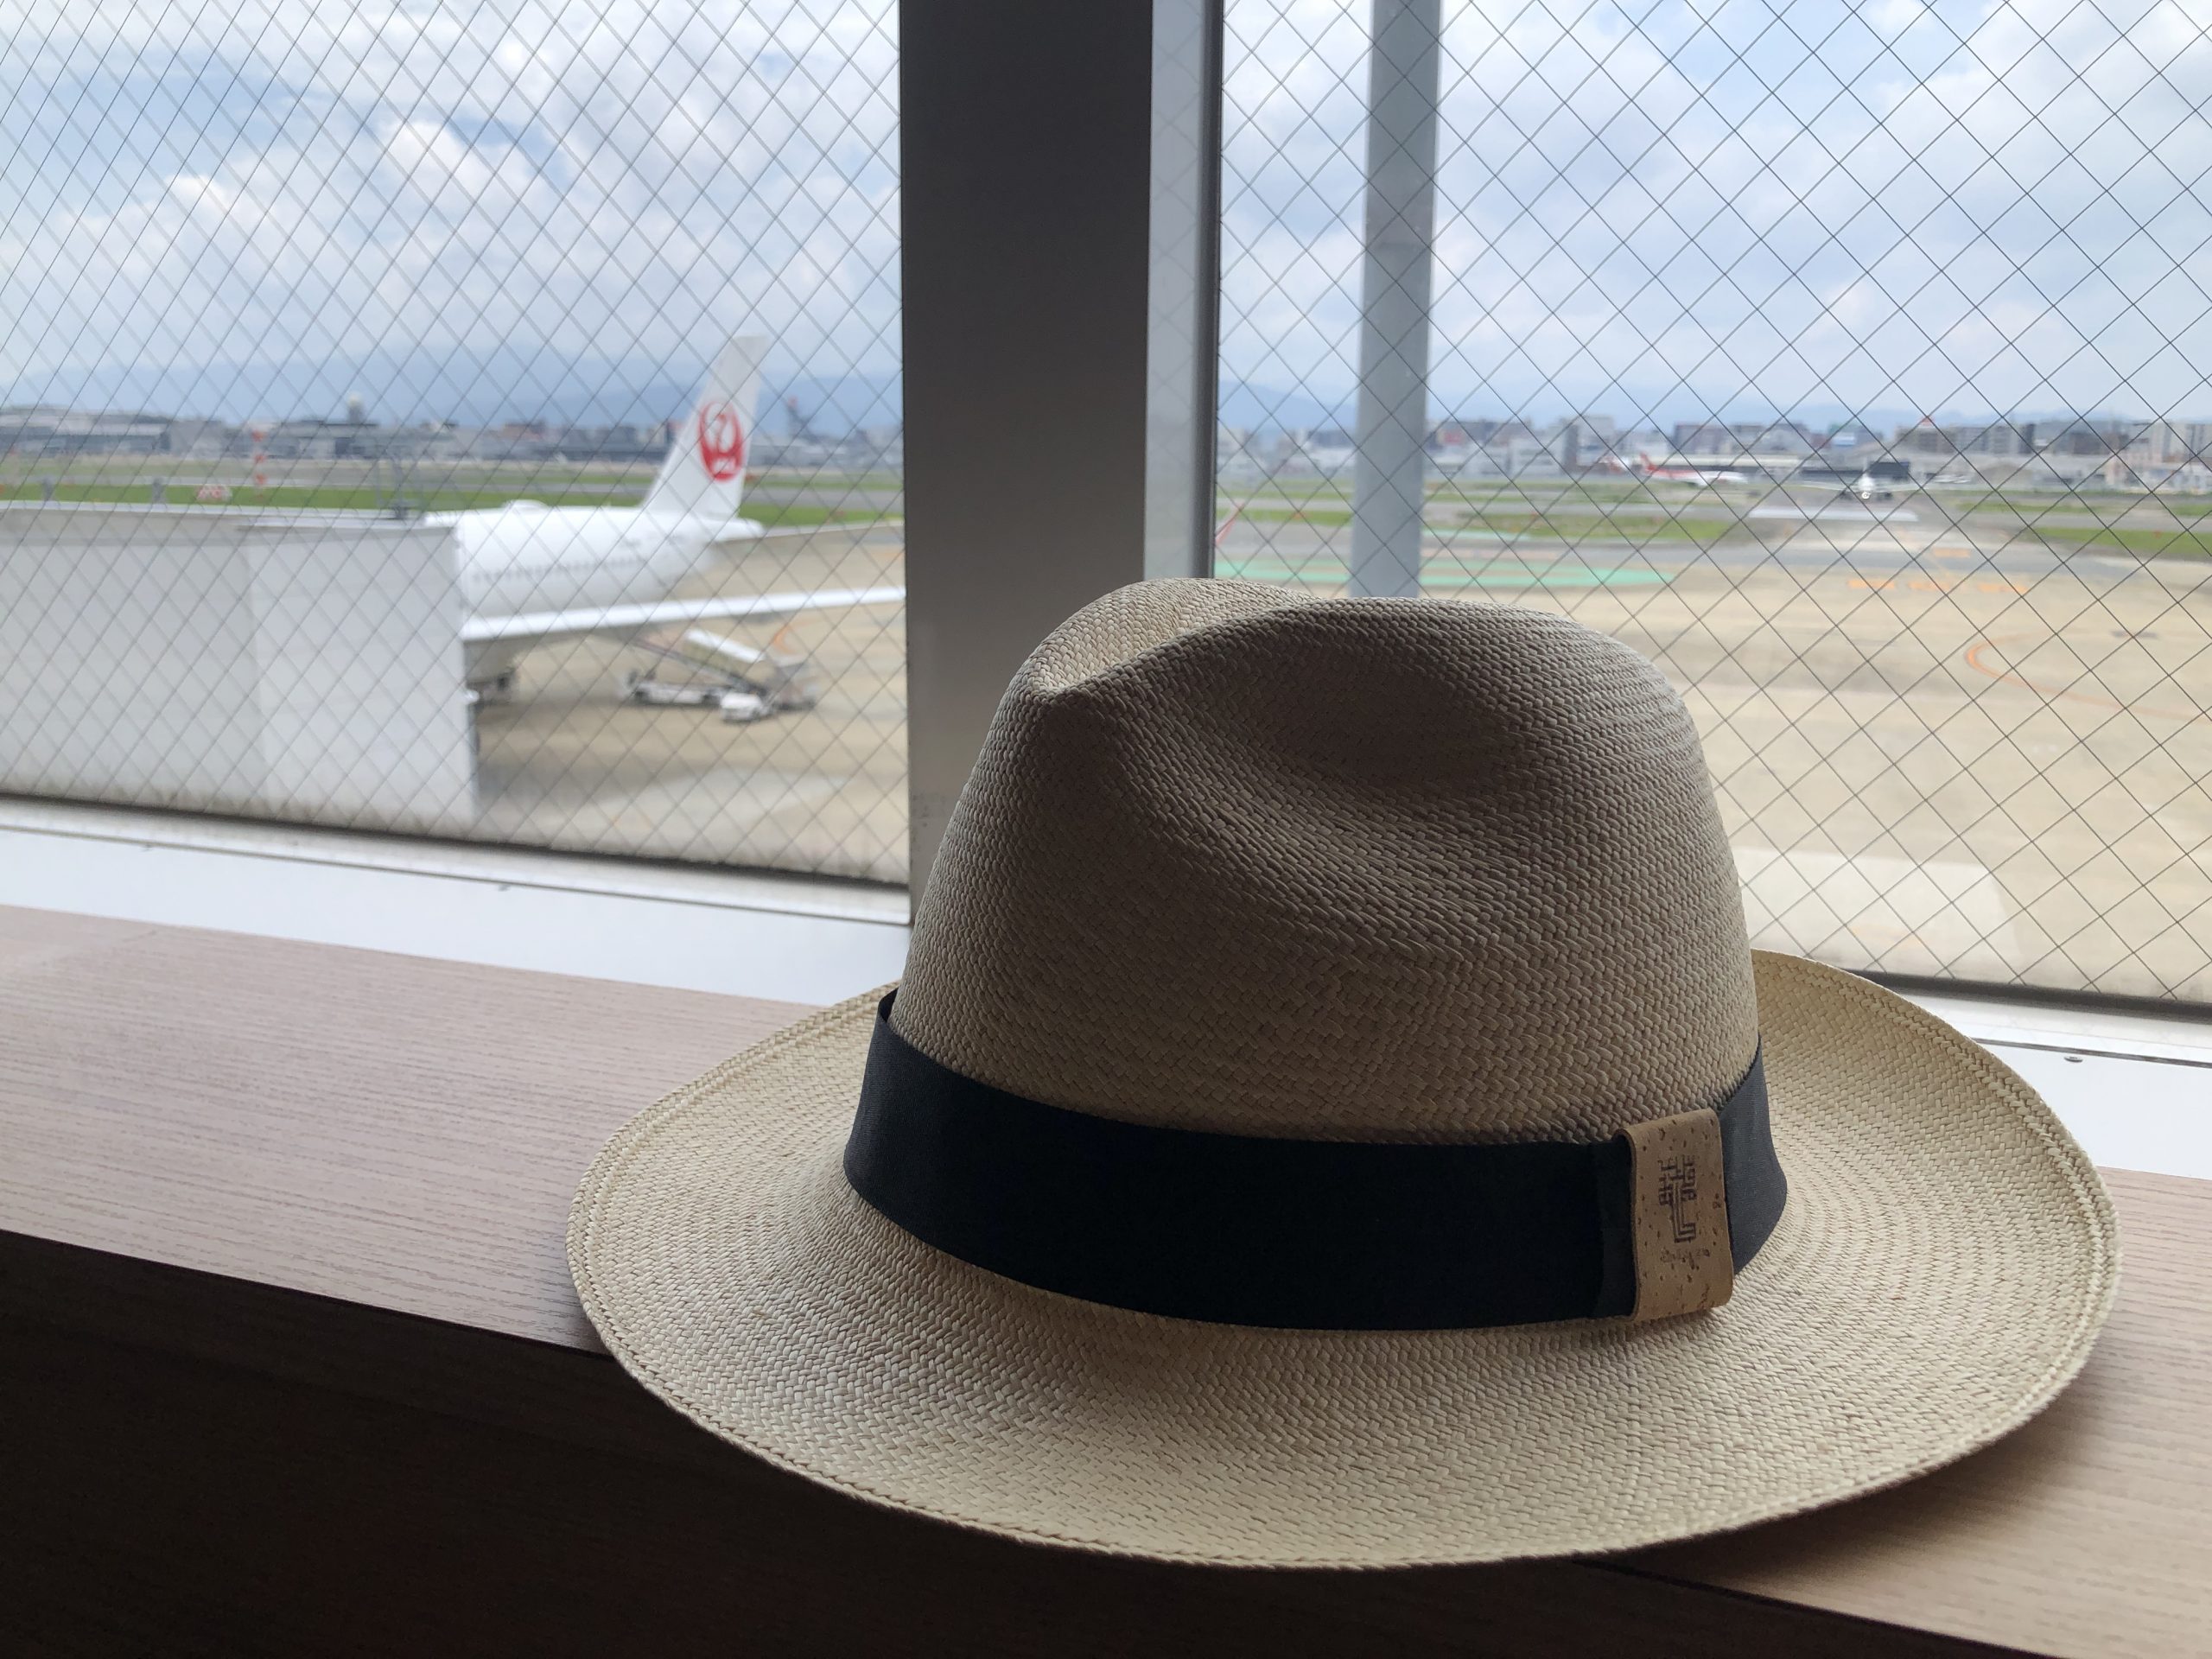 Lounge Review : 福岡空港(FUK) 日本航空(JL) ダイヤモンド・プレミアラウンジ